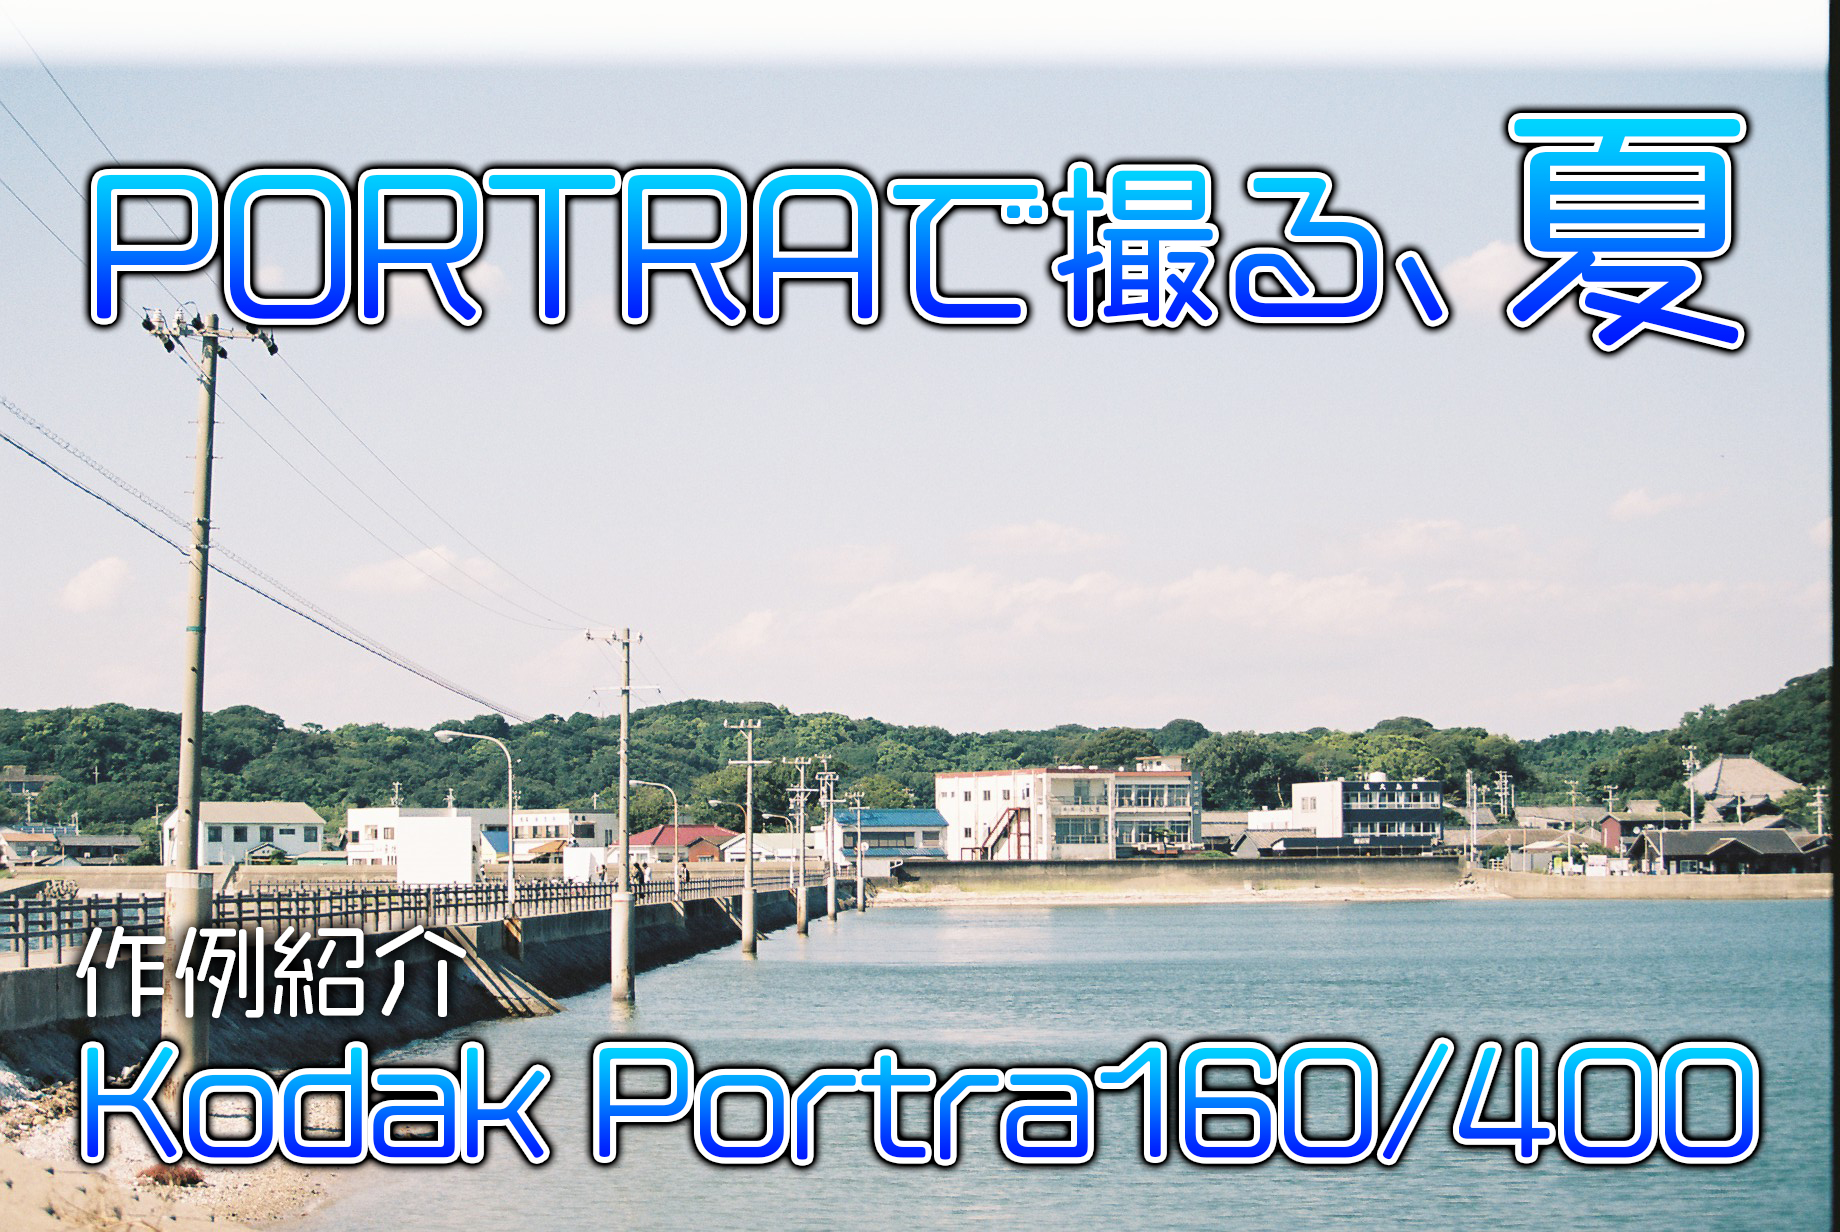 1311円 新規購入 Kodak ポートラ160 36枚撮 2本